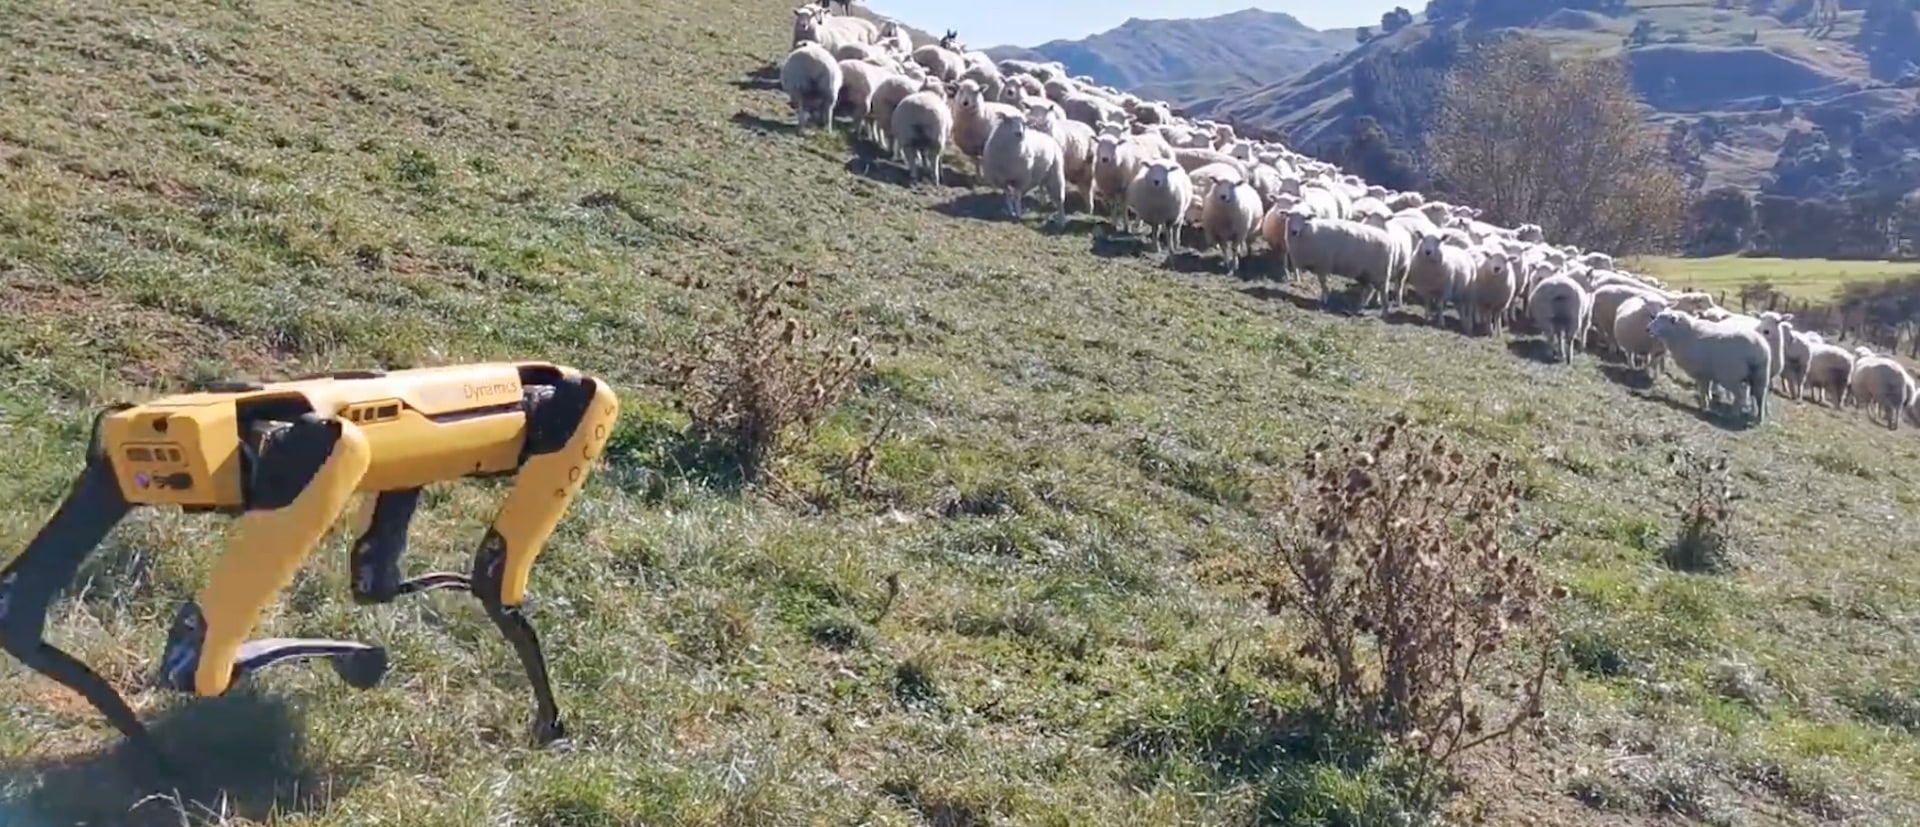 Sport en train de garder un troupeau de moutons.